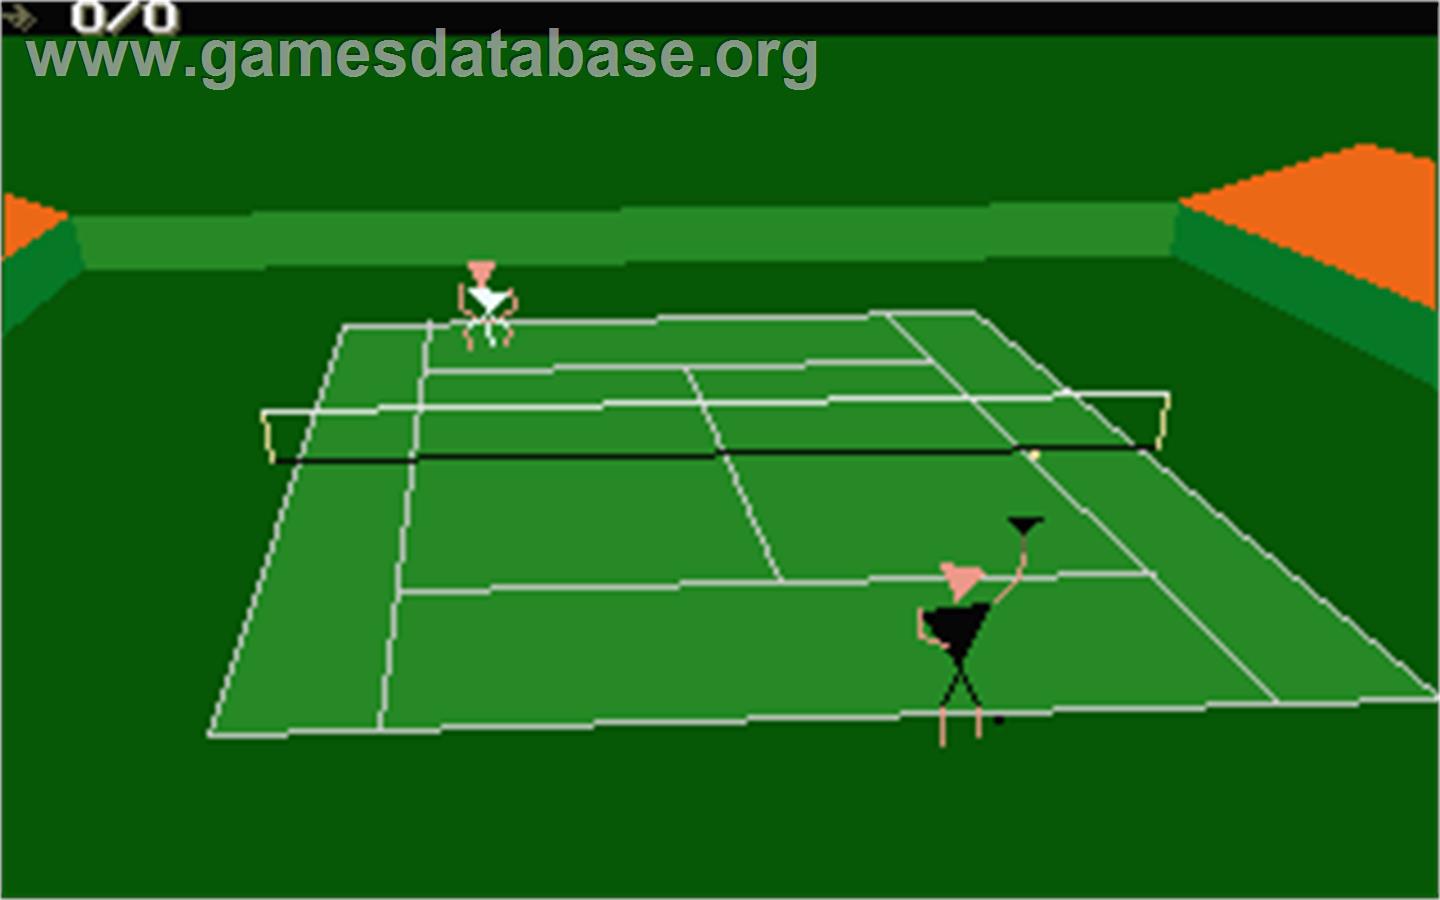 International 3D Tennis - Atari ST - Artwork - In Game